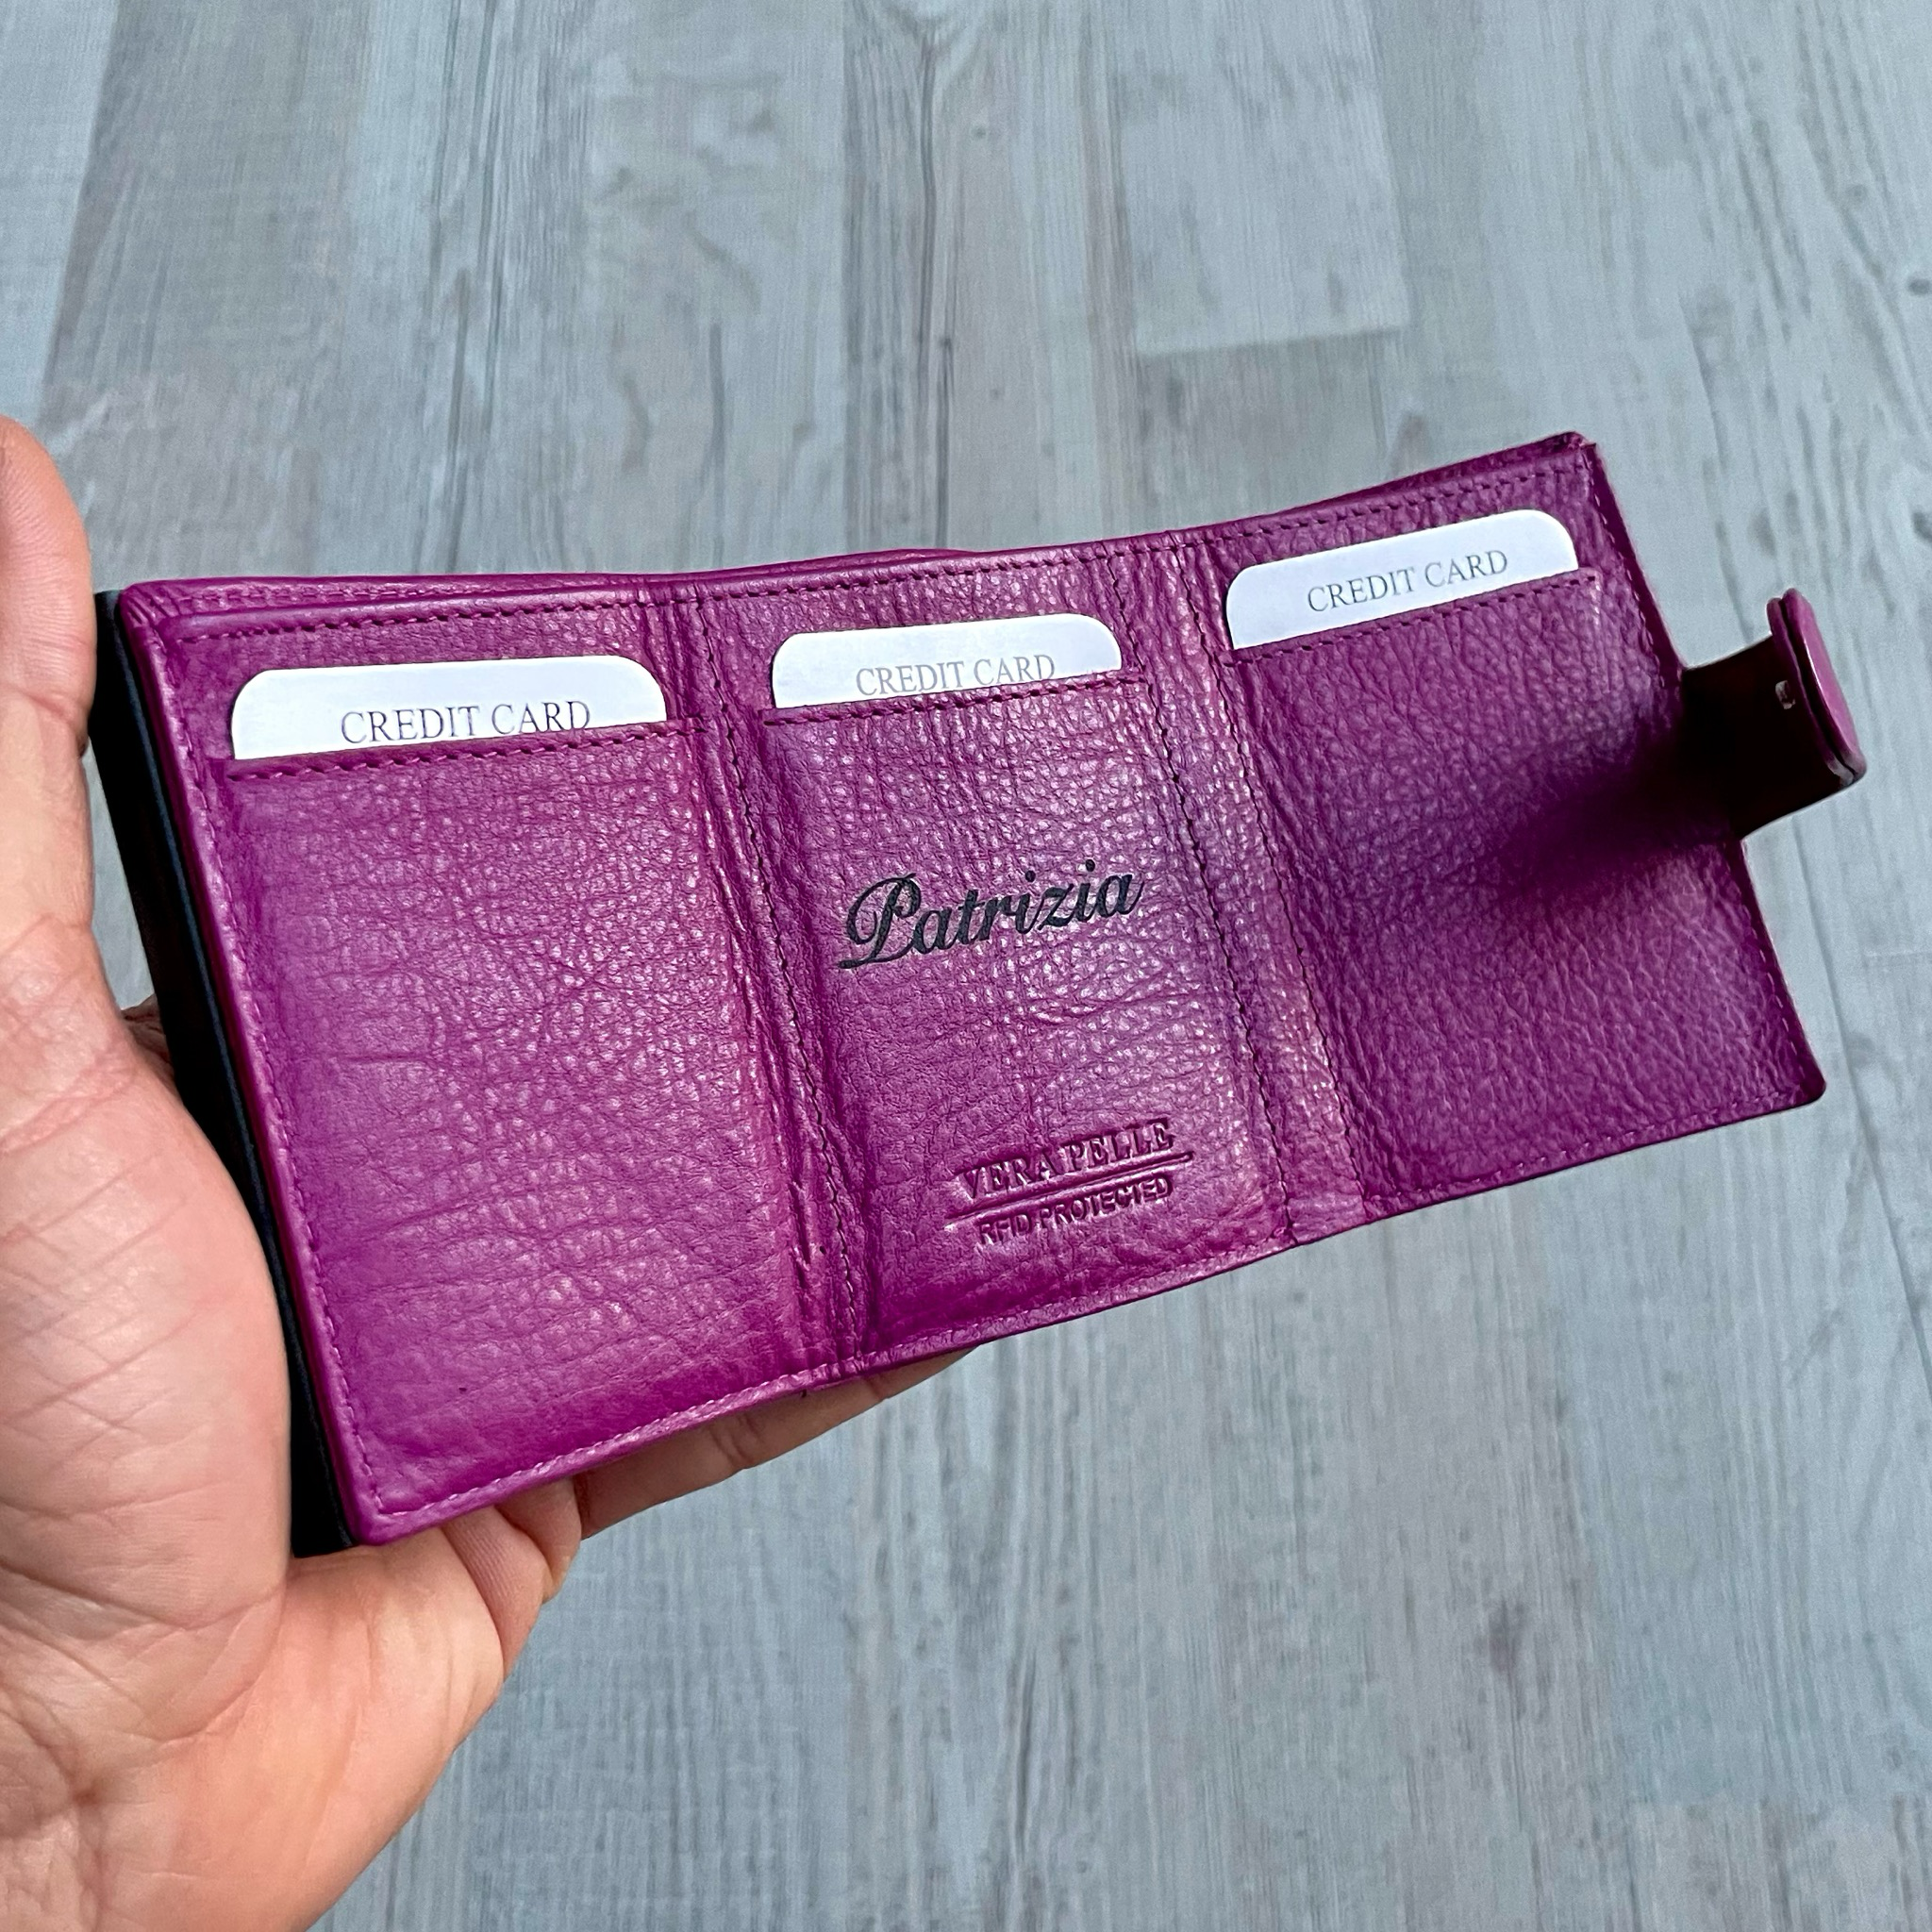 Portafoglio Unisex - Con estrazione Carte - Con Portamonete - CVD Personalizzabile (più colori)